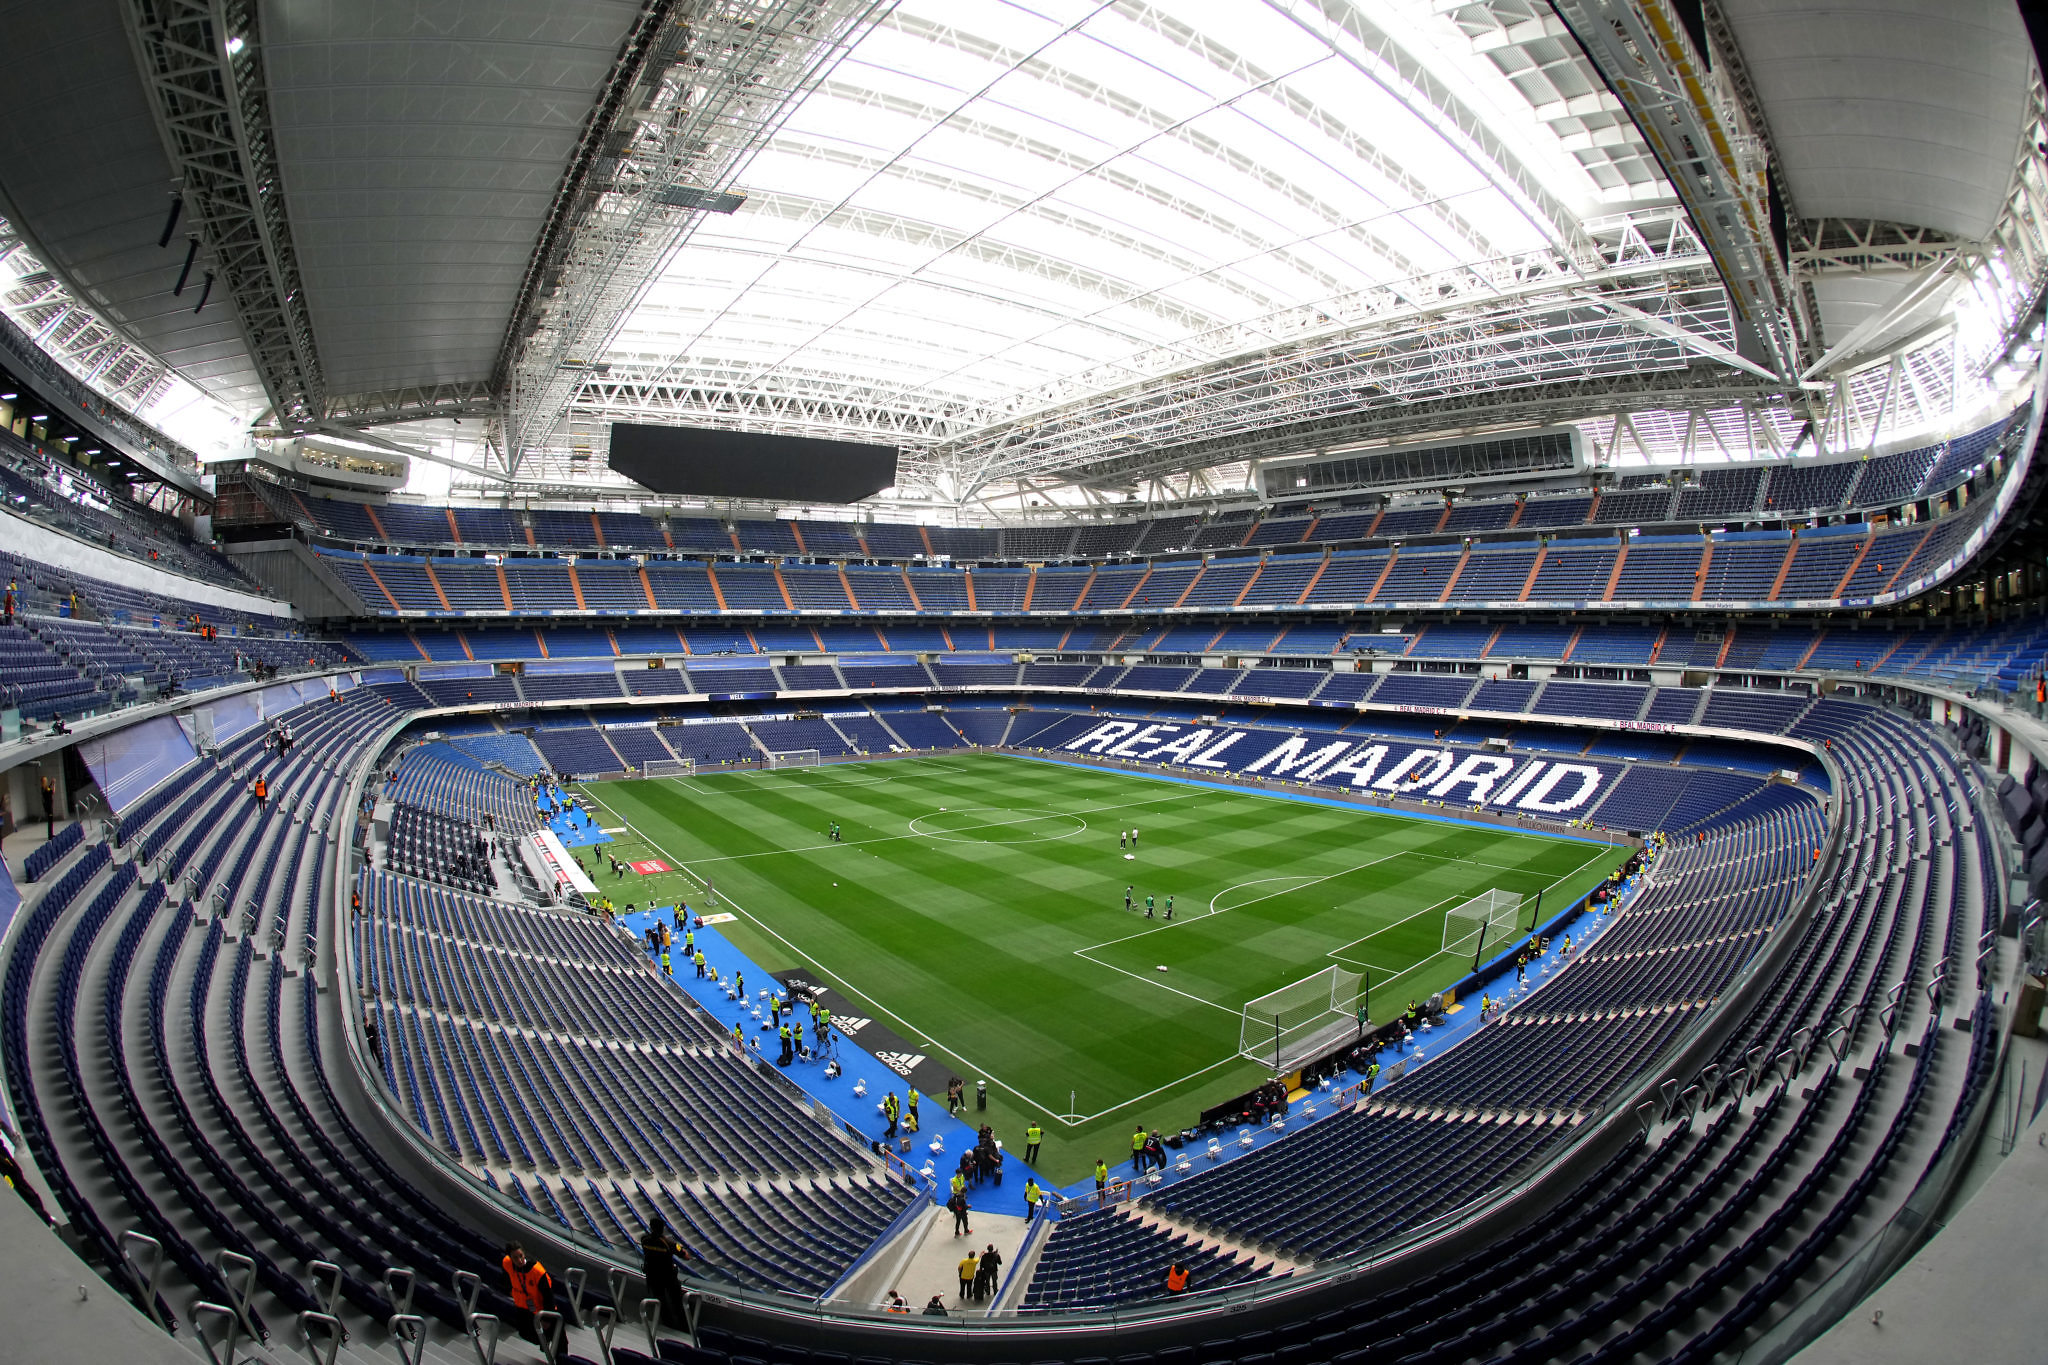 El Santiago Bernabéu albergará la final del Mundial 2030, según MARCA